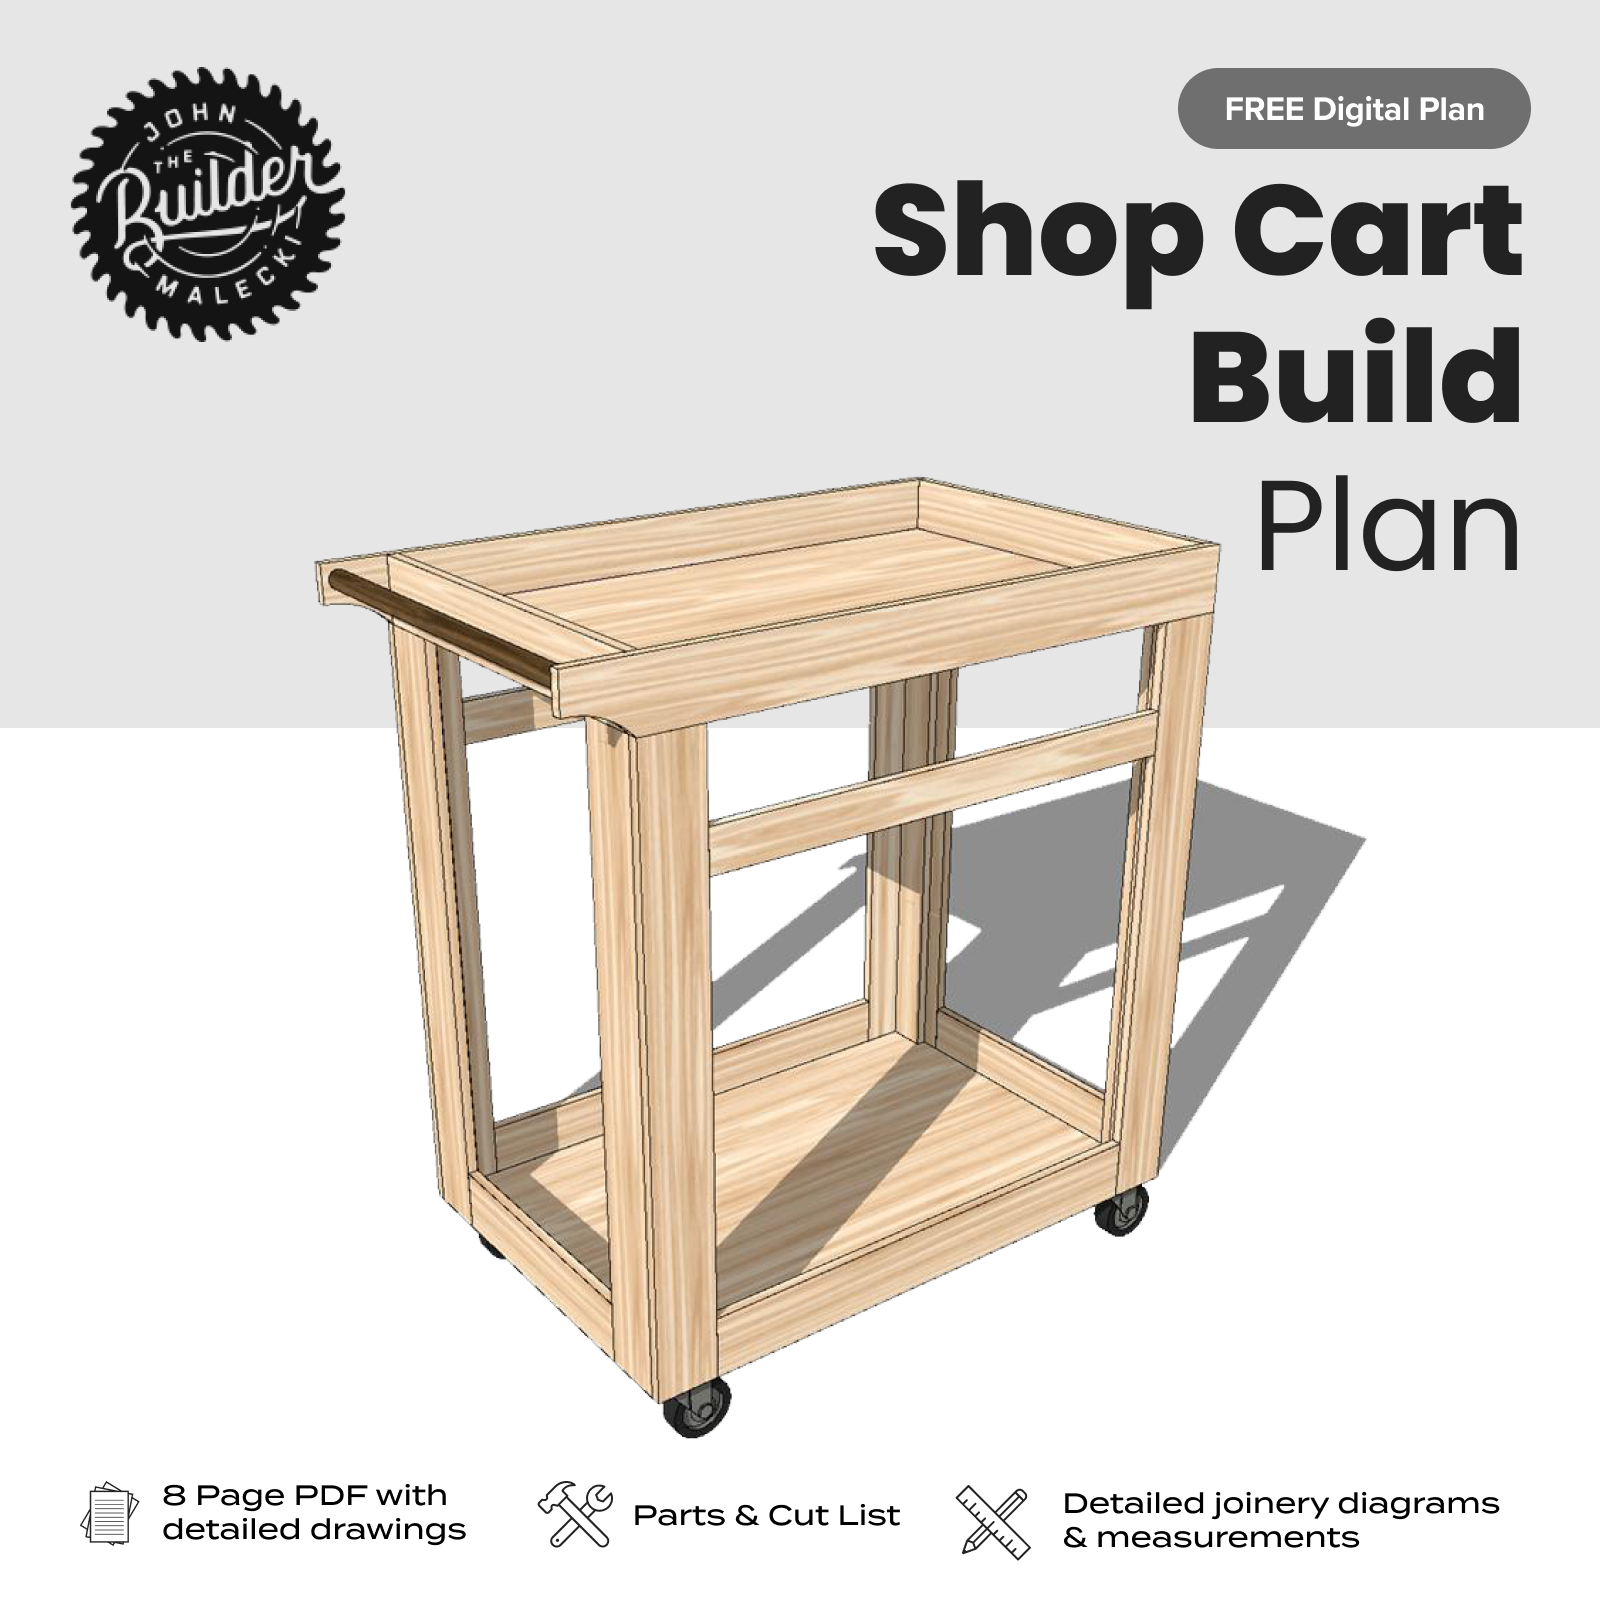 FREE DIY Shop Cart Plan - John Malecki Store